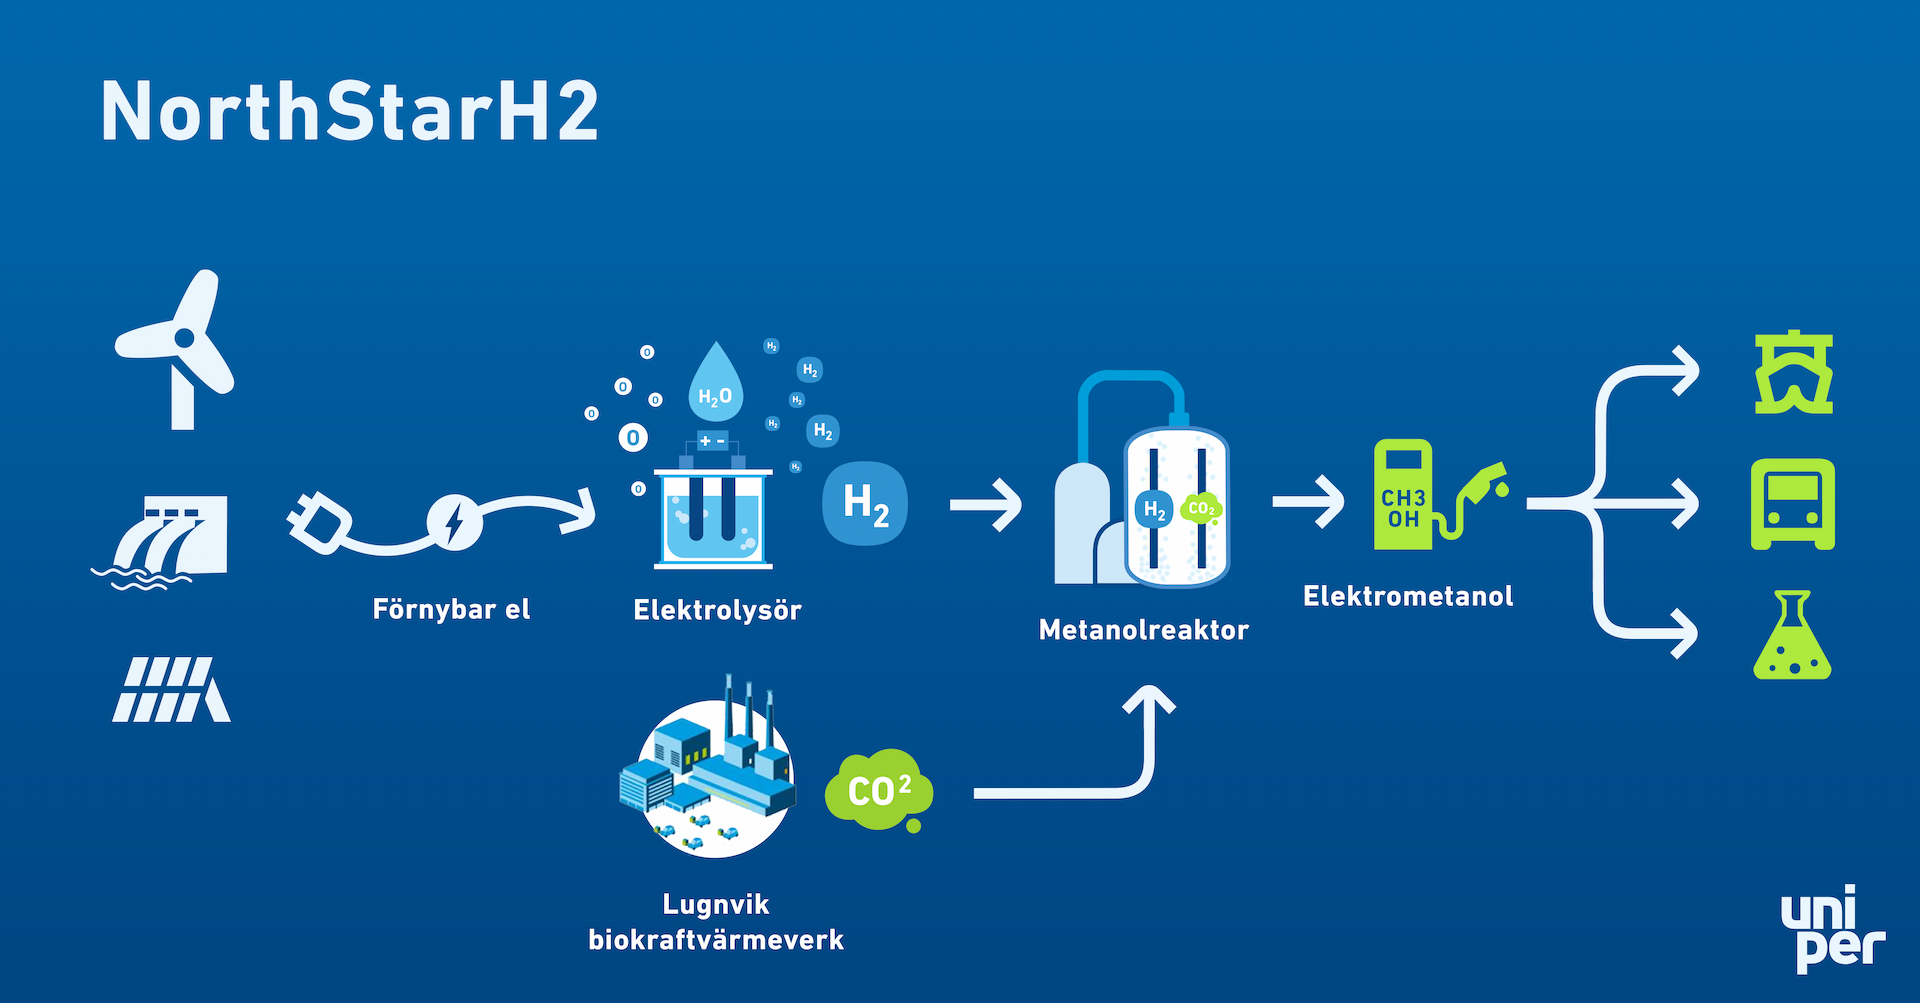 En schematisk beskrivning av NorthStarH2 i Östersund. Vätgasen tillverkas av förnybar el. I metanolreaktorn tillsätts biogen CO2 som fångats in från Jämtkrafts båda kraftvärmeverk. Slutresultatet blir förnybar e-metanol till transporter och tillverkningsindustri.